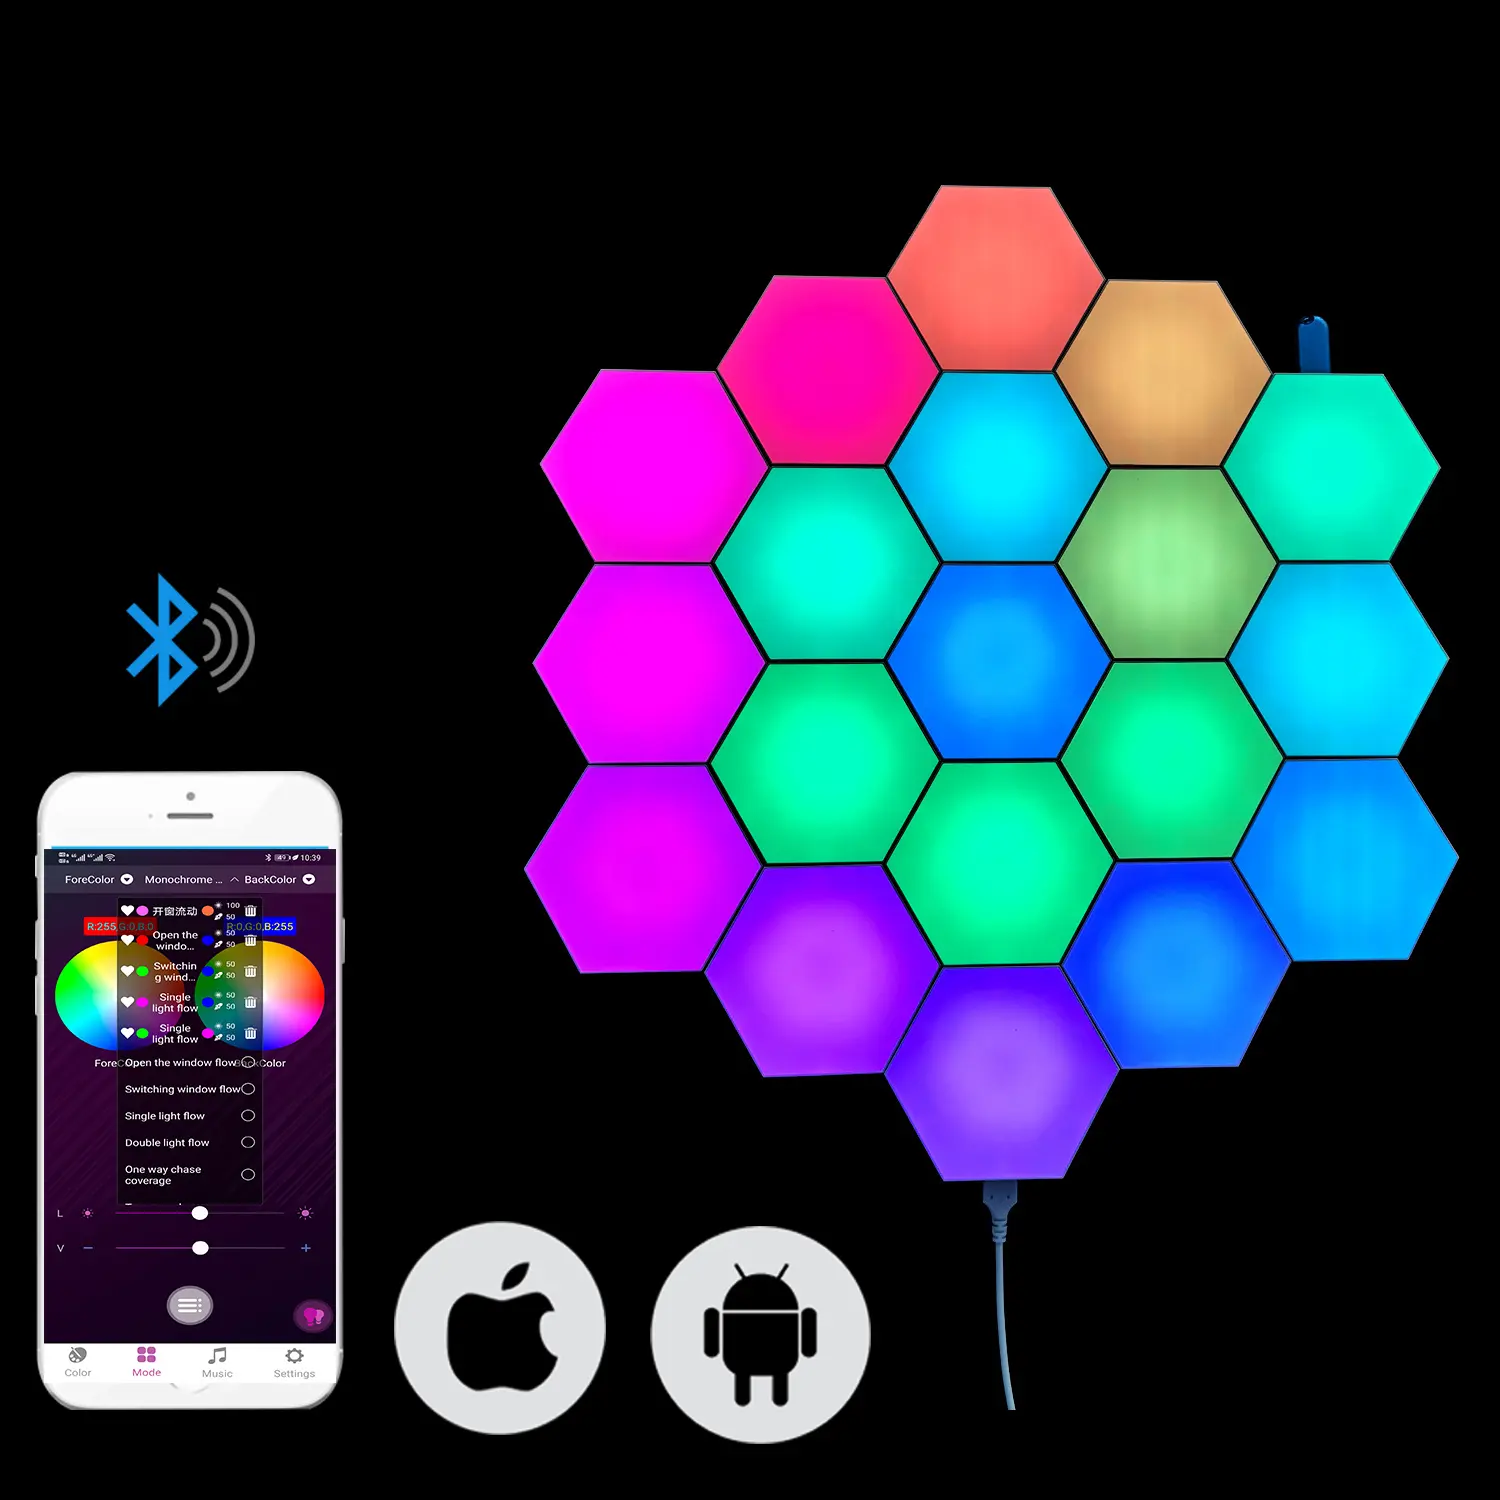 Lámpara inteligente Quantum Honeycomb RGB para el hogar, luz Modular de 16 millones de colores con Control por aplicación de teléfono móvil, regalos novedosos DIY